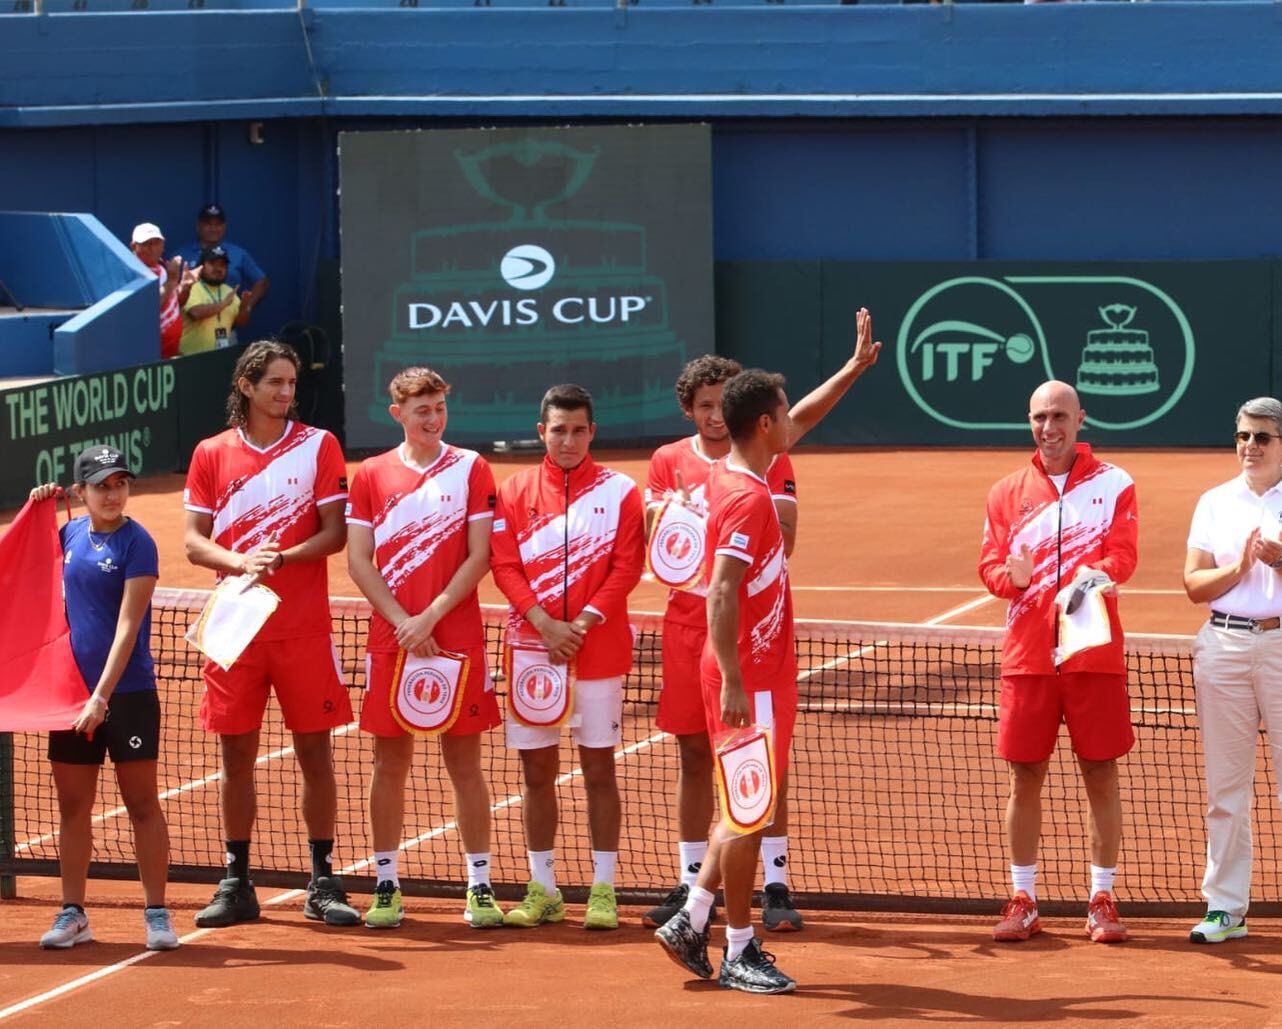 La selección peruana presentándose en la cancha para el duelo contra Noruega por el Grupo Mundial I de la Copa Davis.